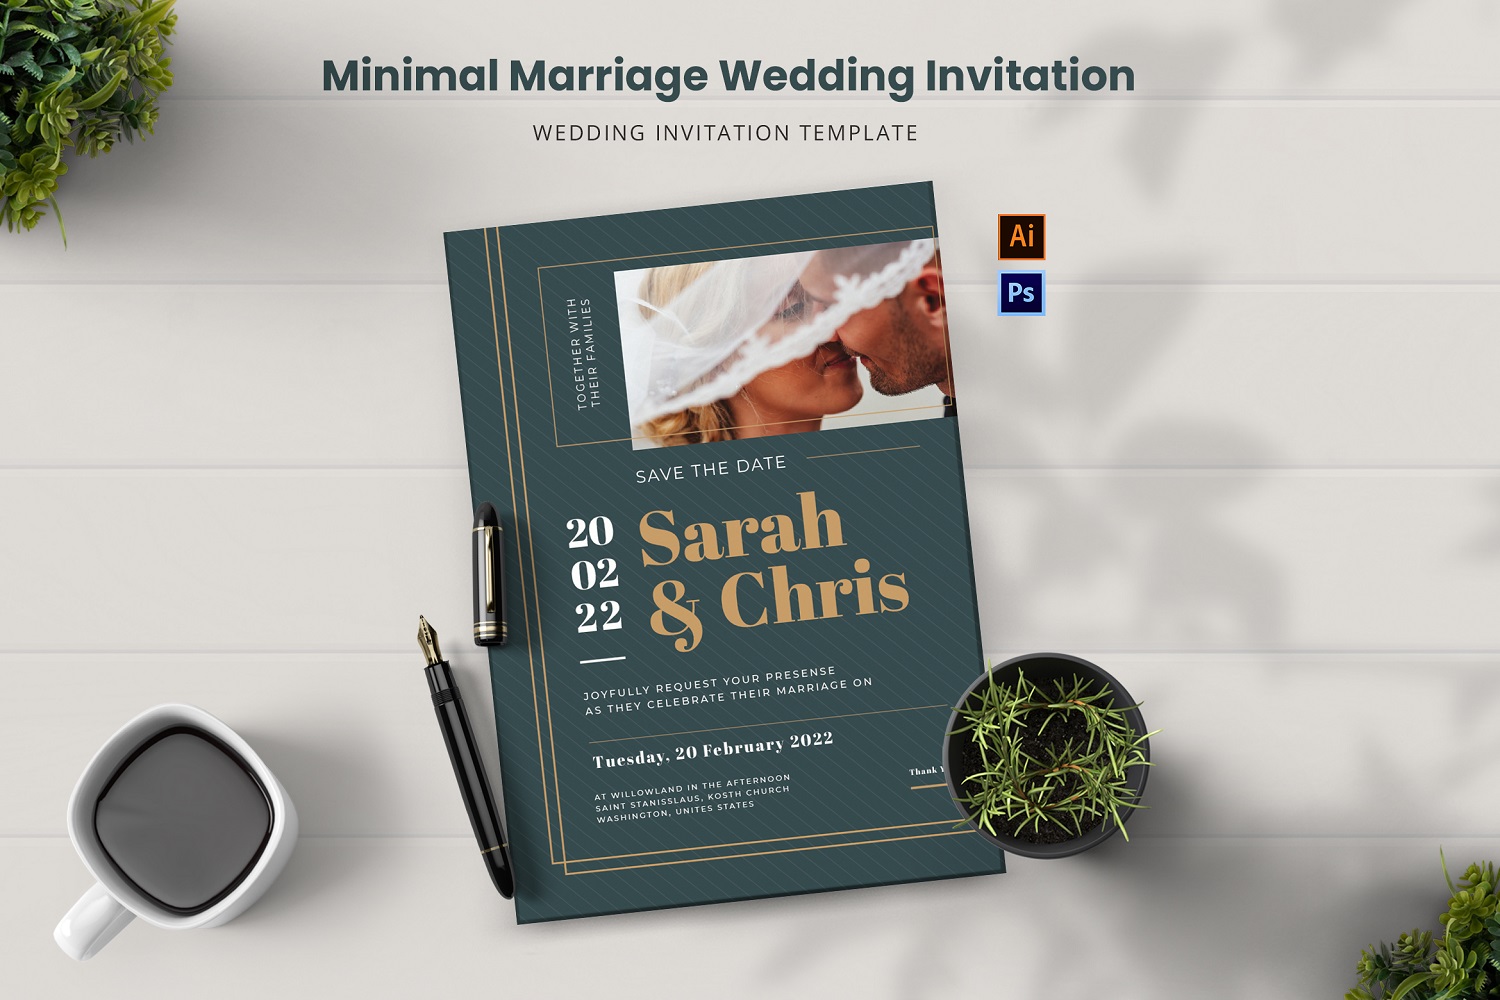 Minimal Marriage Wedding Invitation